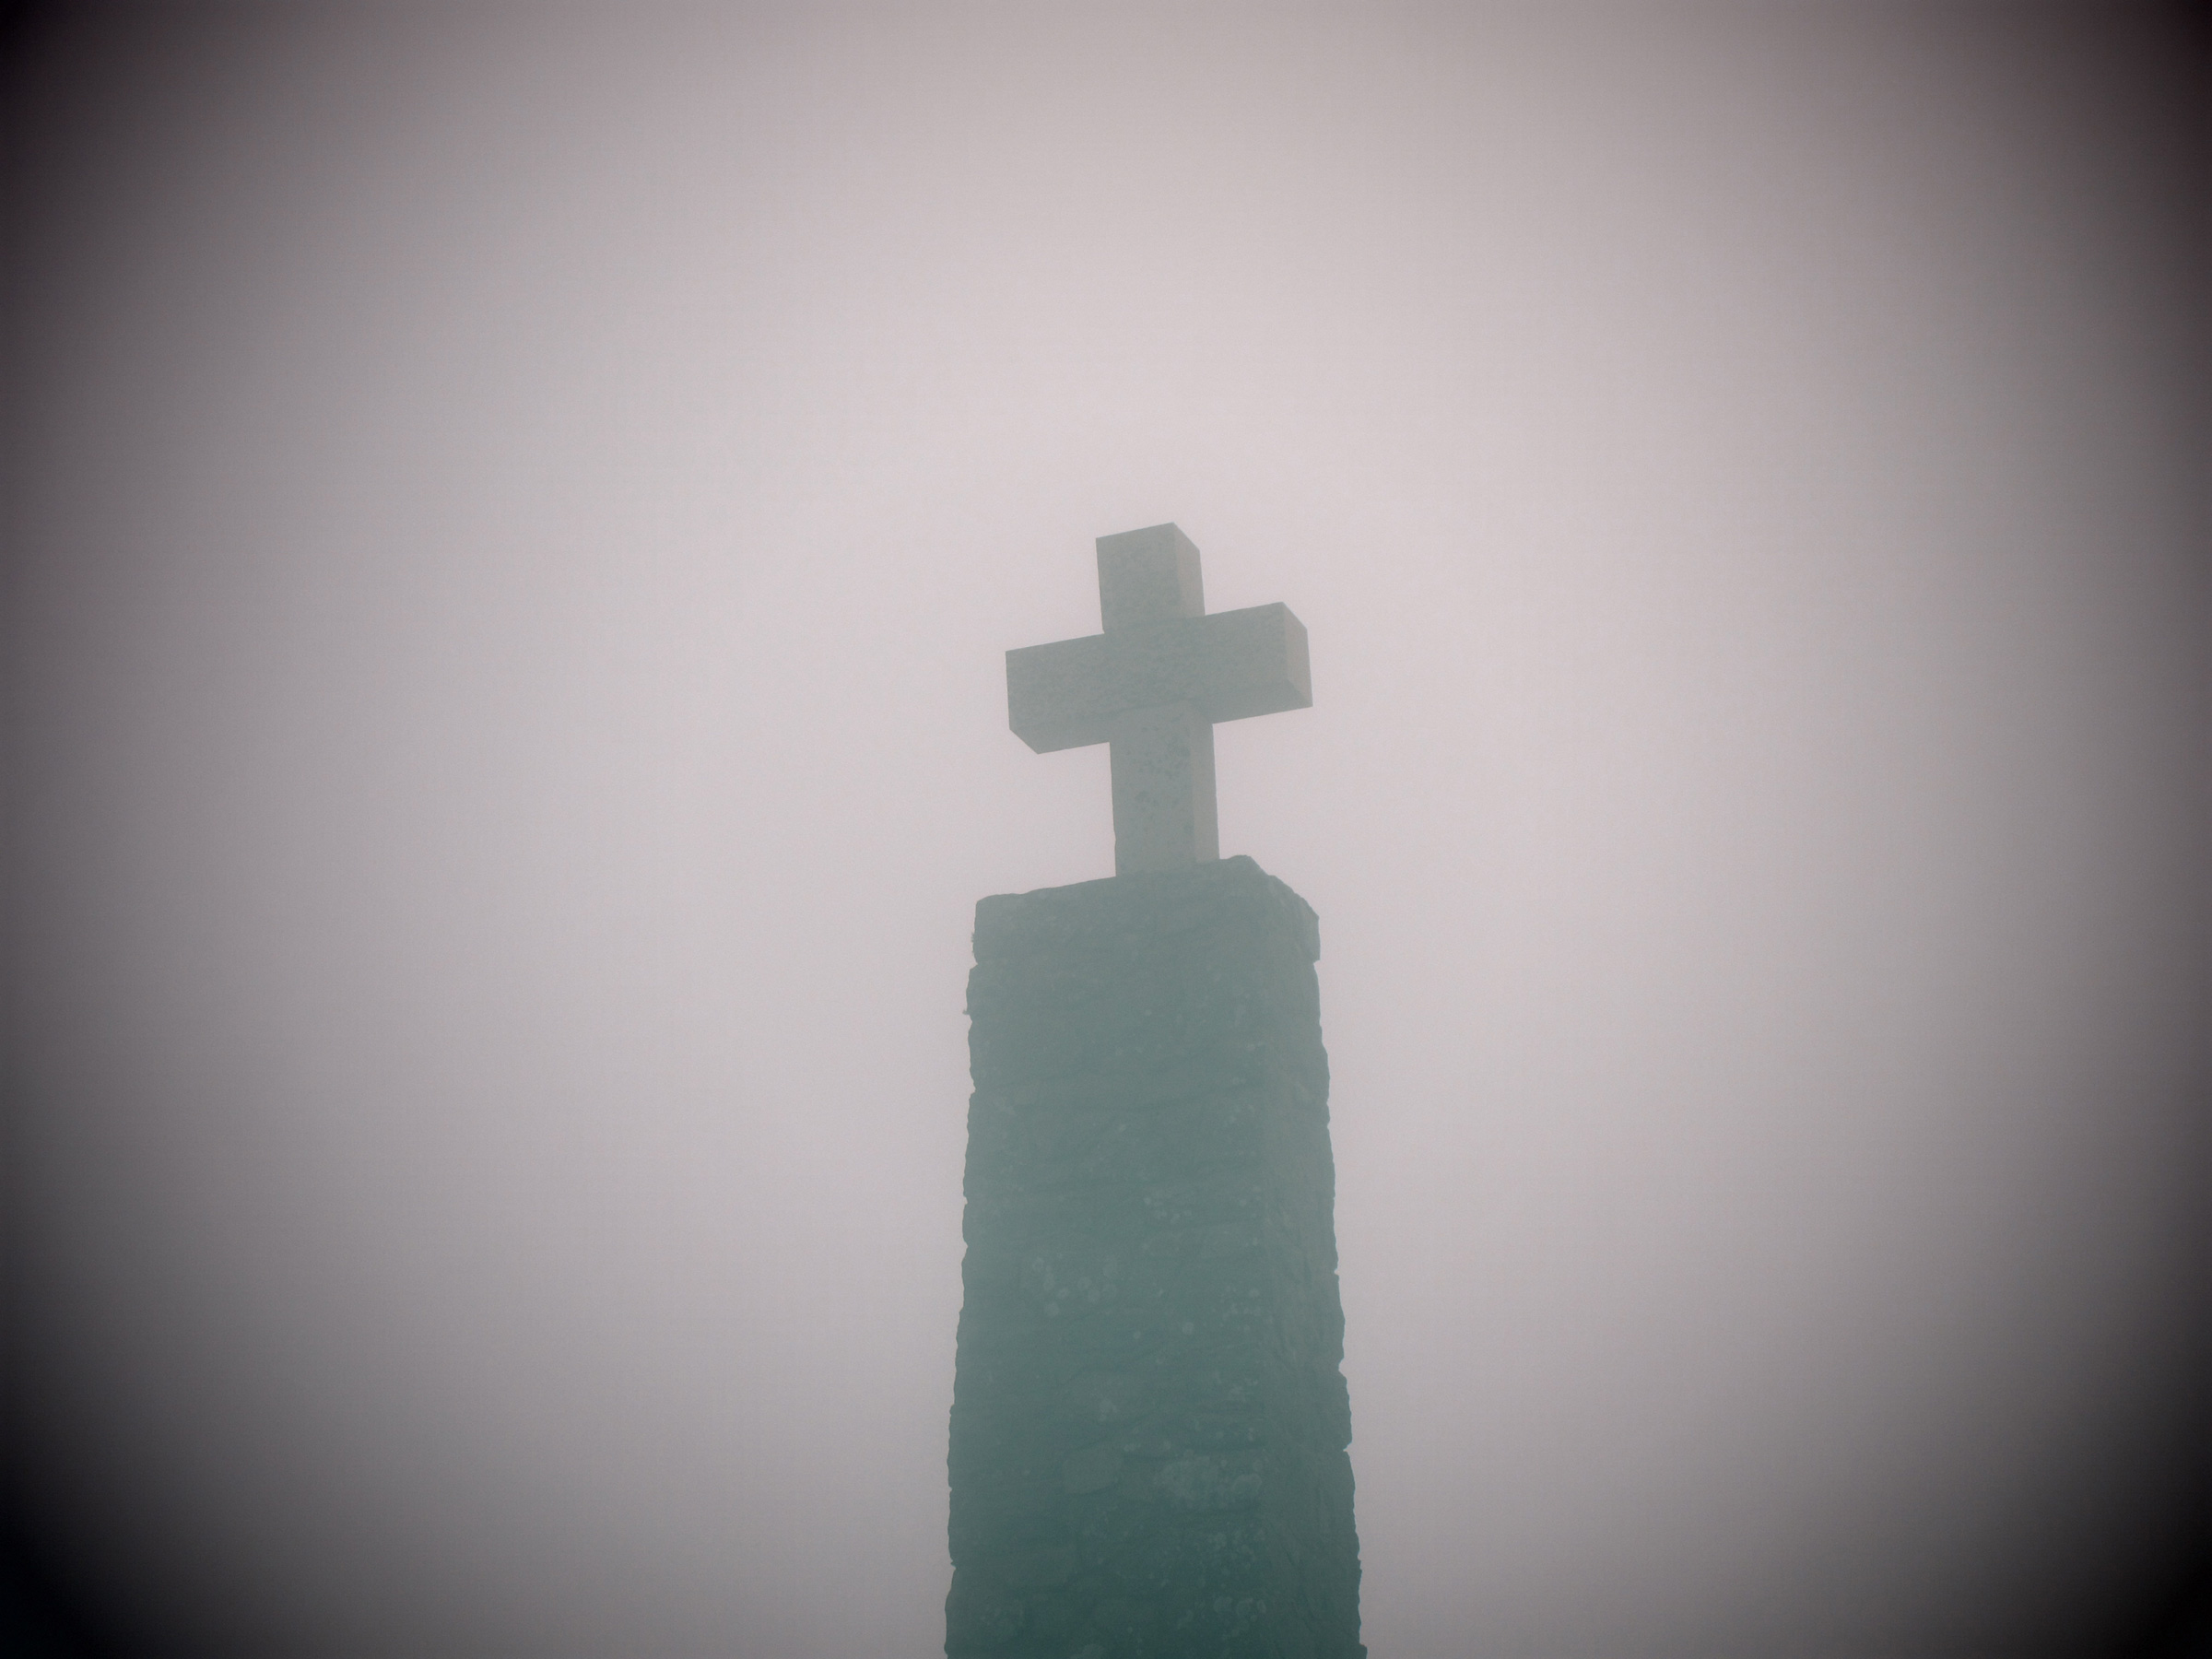 Kreuz im Nebel: Hier hilft keine Positionierung